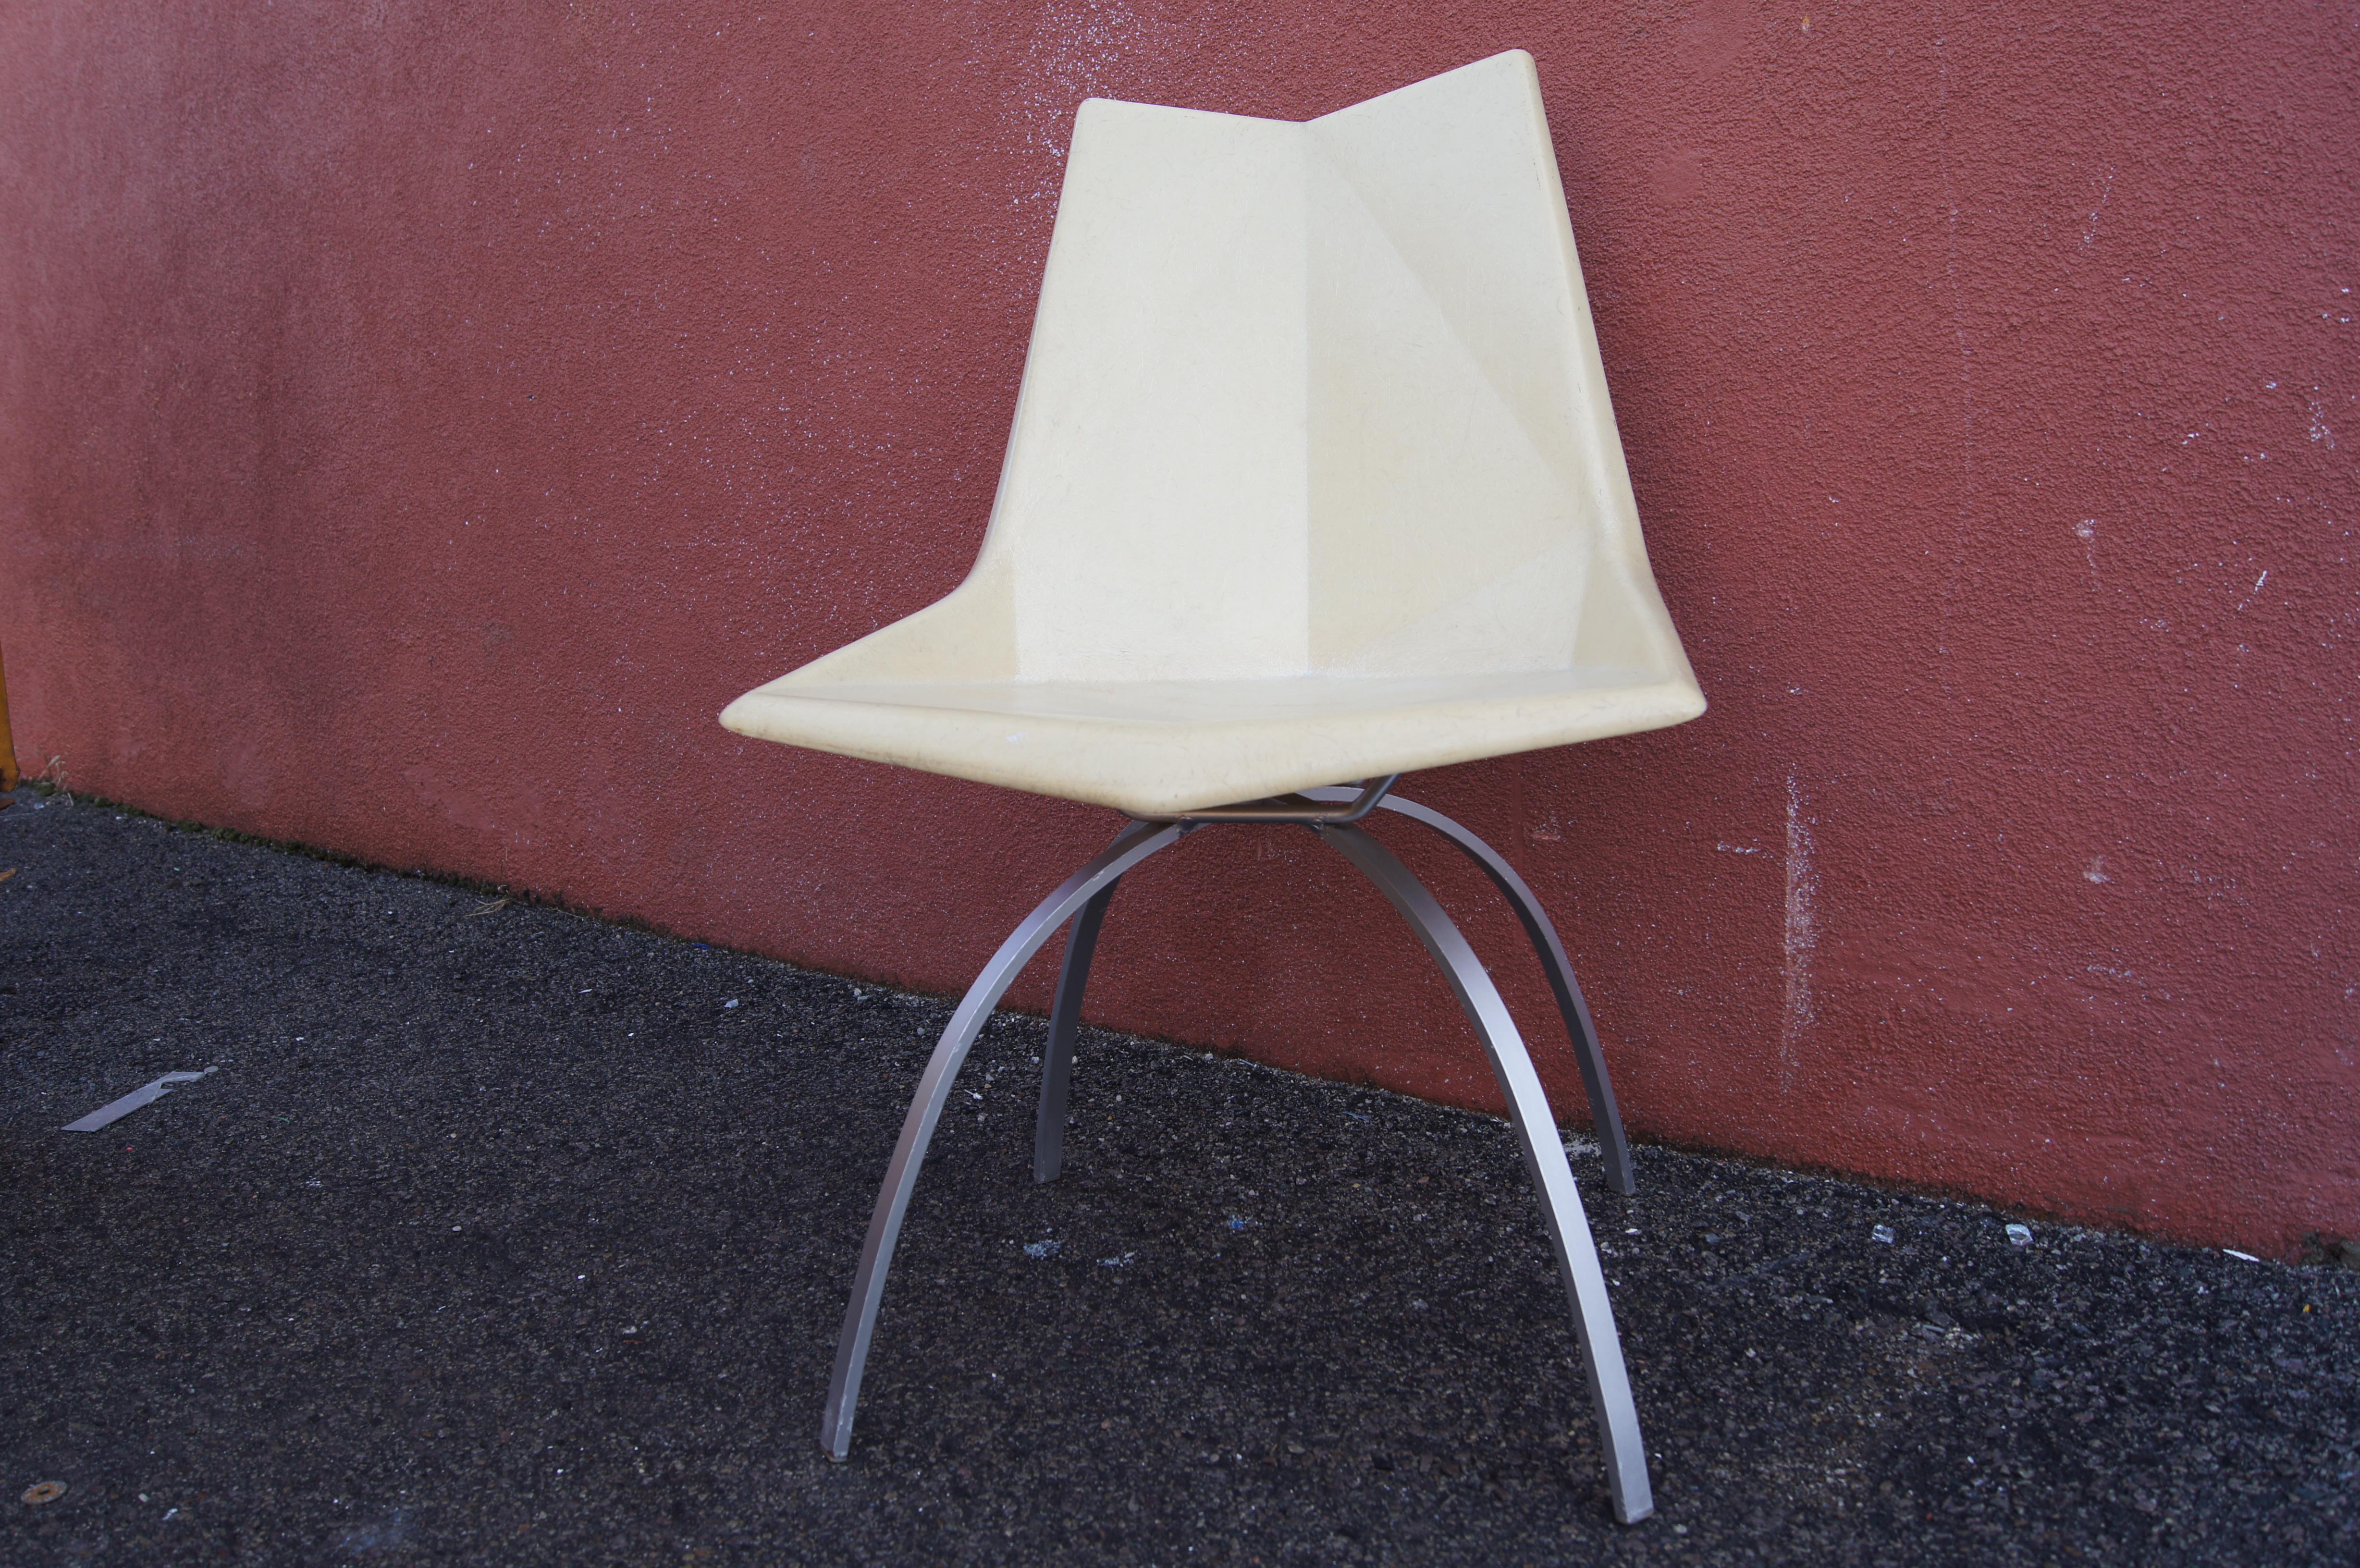 Conçue en 1959 comme la chaise à facettes, la chaise en fibre de verre de Paul McCobb est désormais connue sous le nom de chaise Origami, ses facettes moulées rappelant l'art japonais du pliage du papier. Cette version blanc cassé de sa chaise